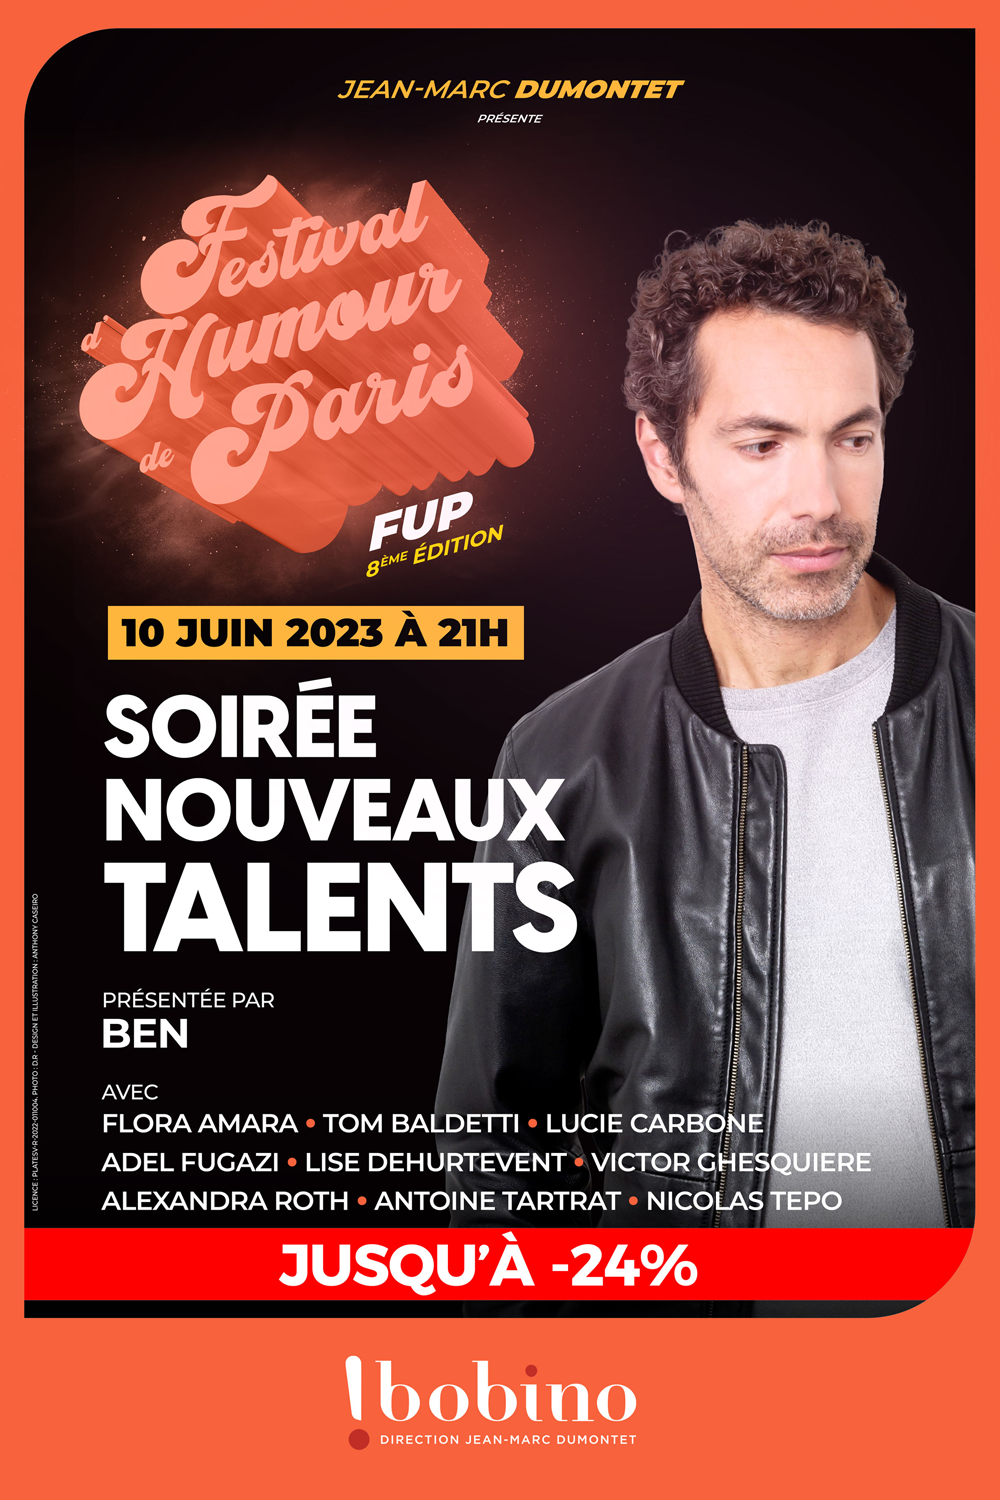 La soirée des nouveaux talents - Festival d'Humour de Paris FUP